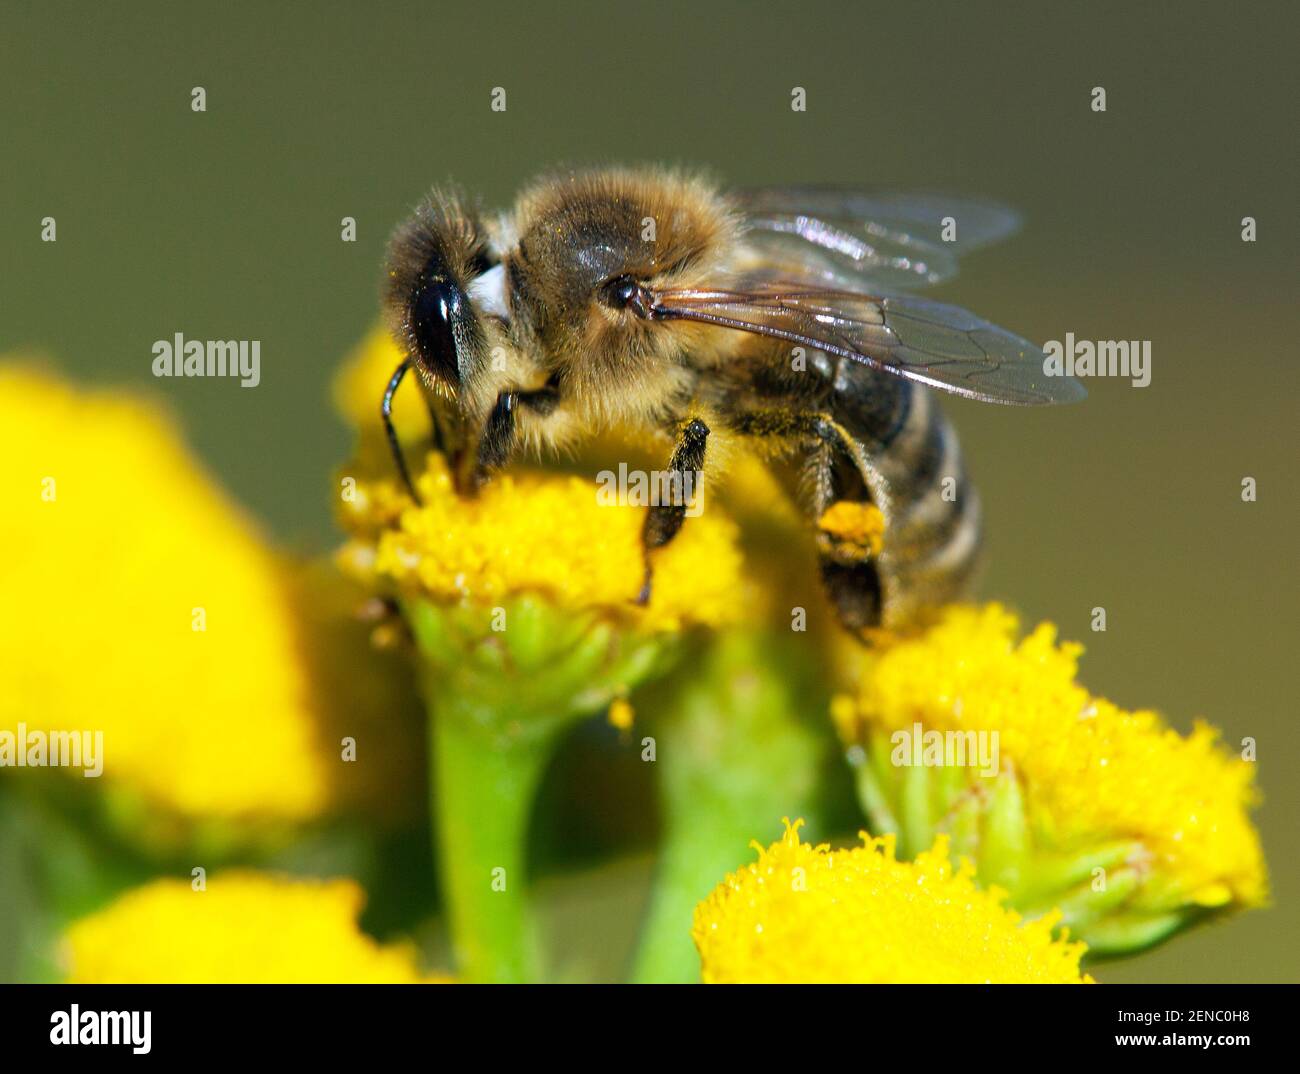 Détail de l'abeille ou de l'abeille en latin APIs mellifera, abeille européenne ou occidentale pollinisée de la fleur jaune Banque D'Images